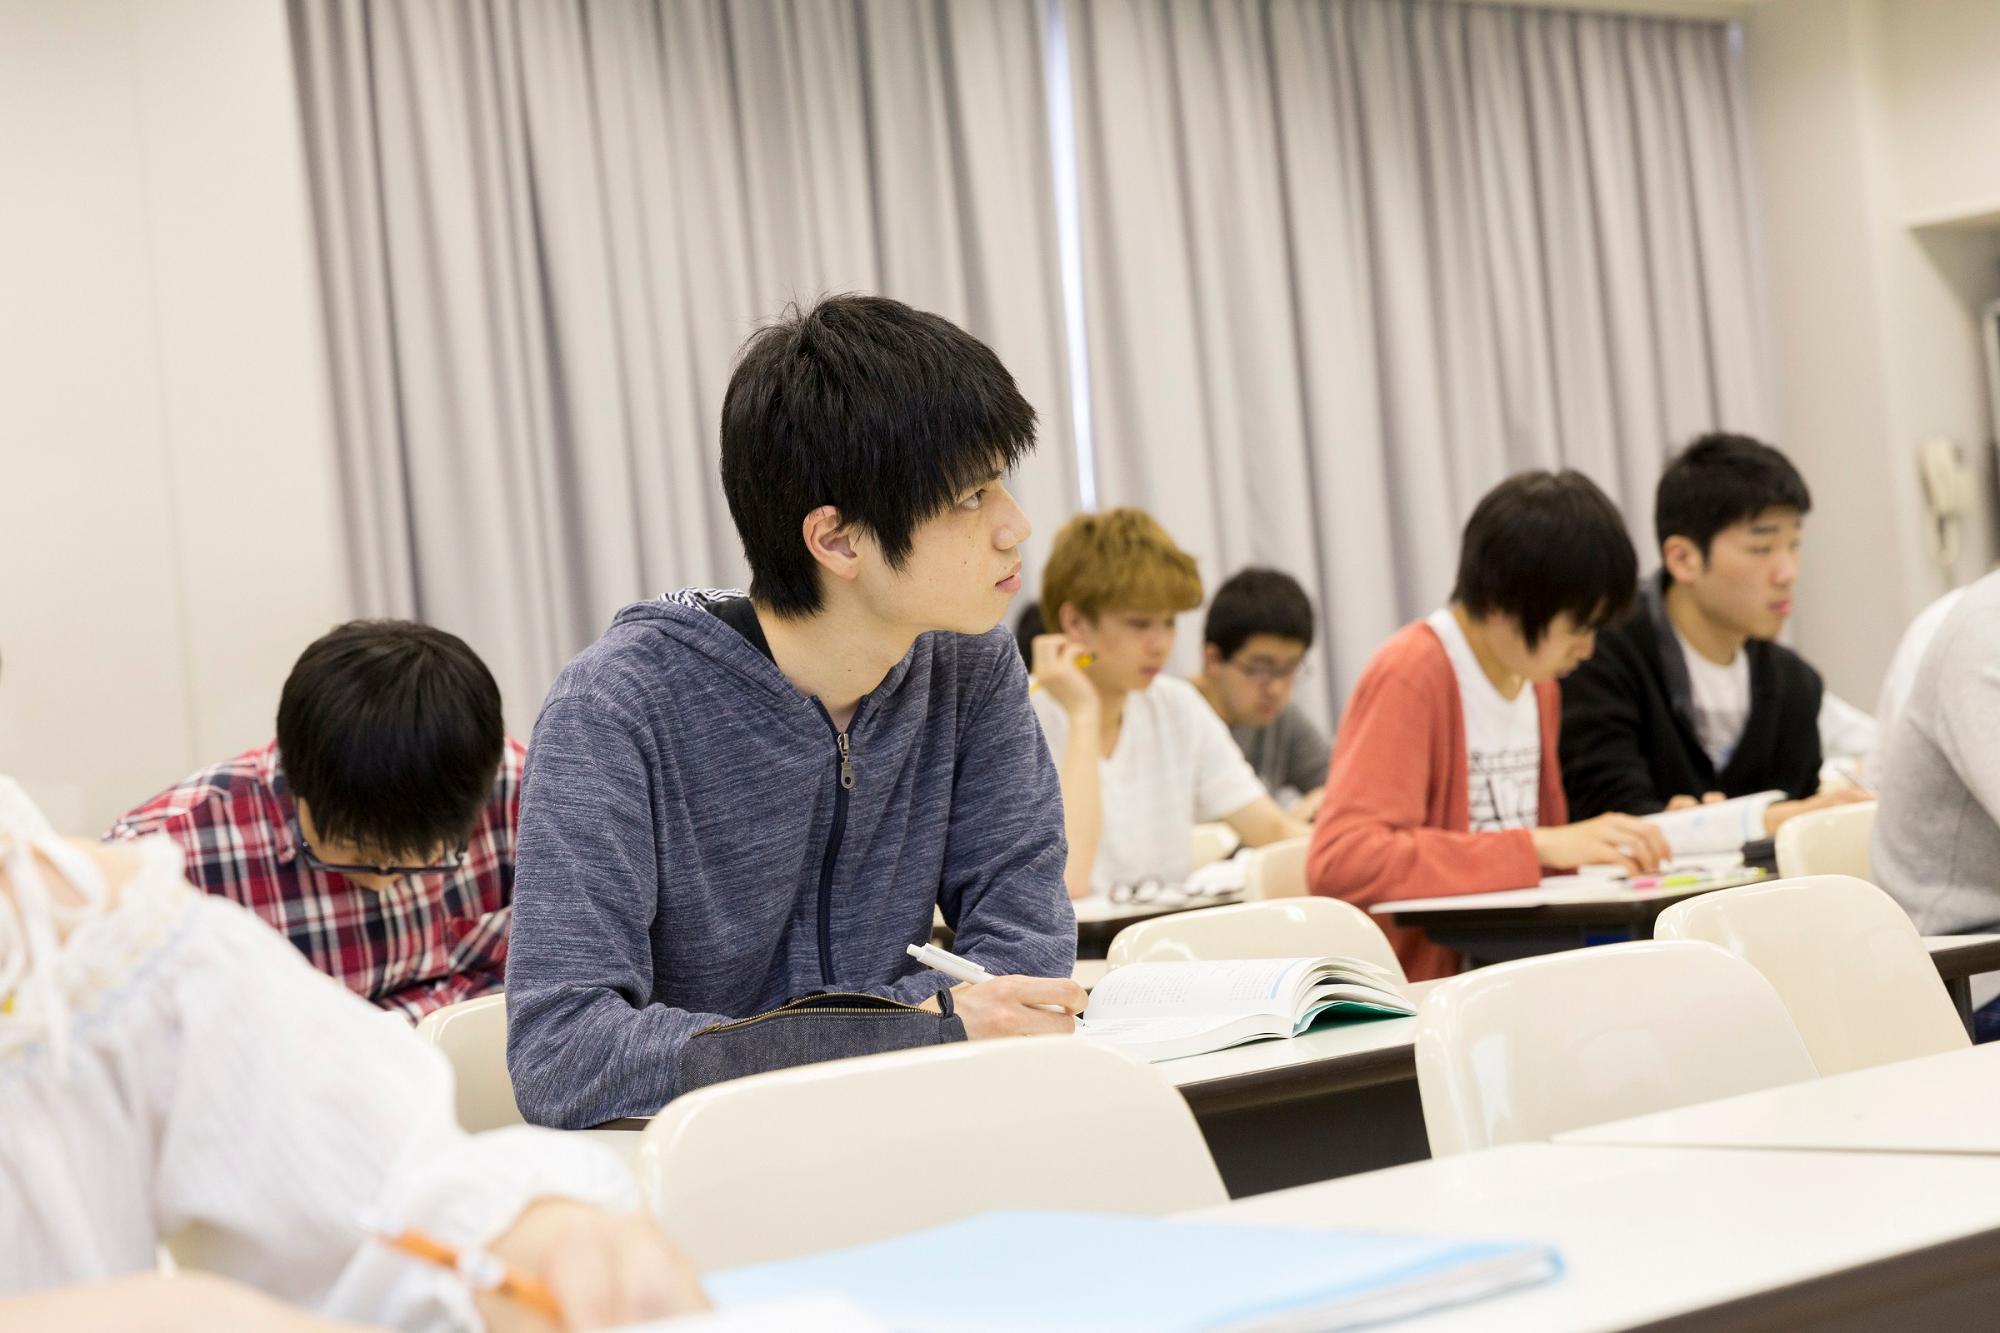 新潟工科大学の学生たちが、真剣なまなざしで授業を受けている写真